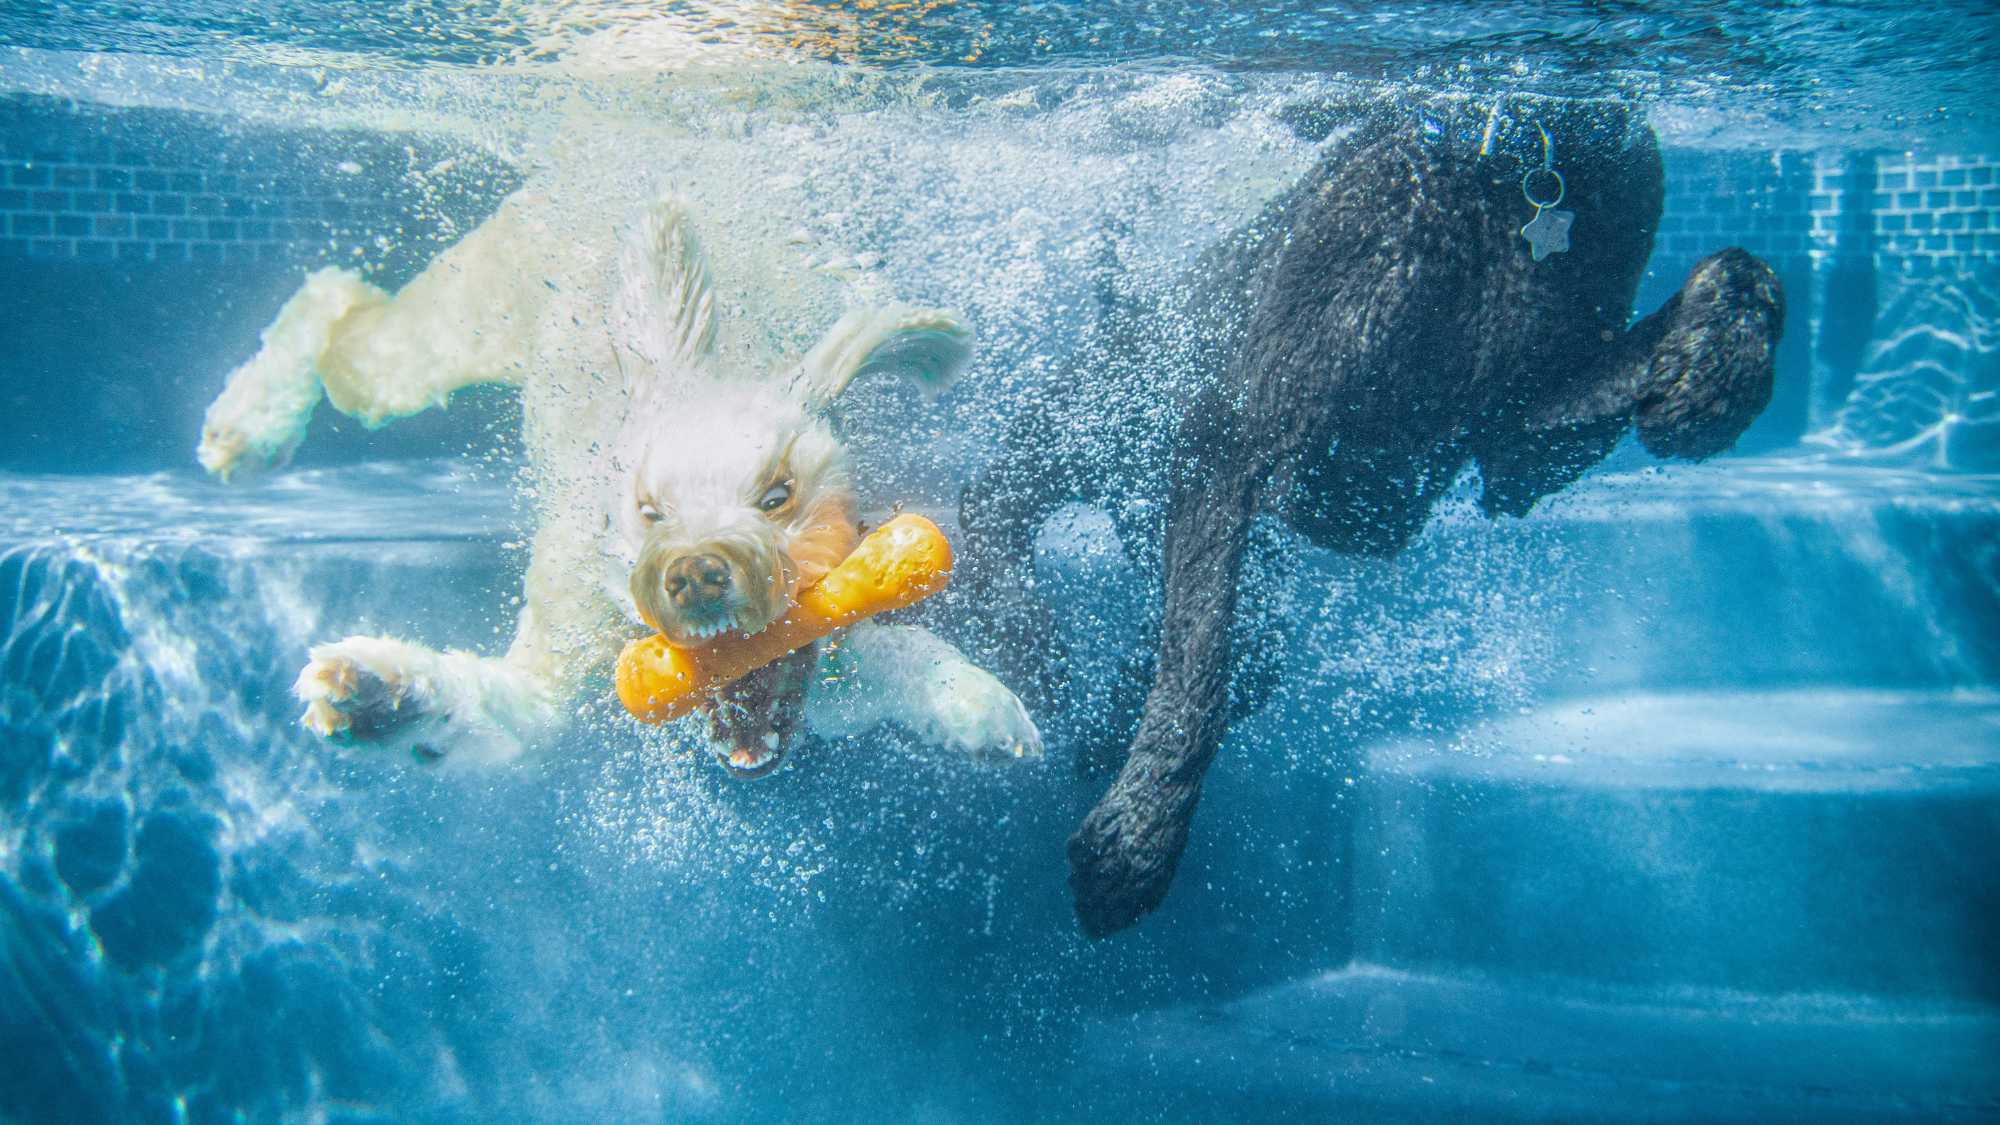 Underwater dog